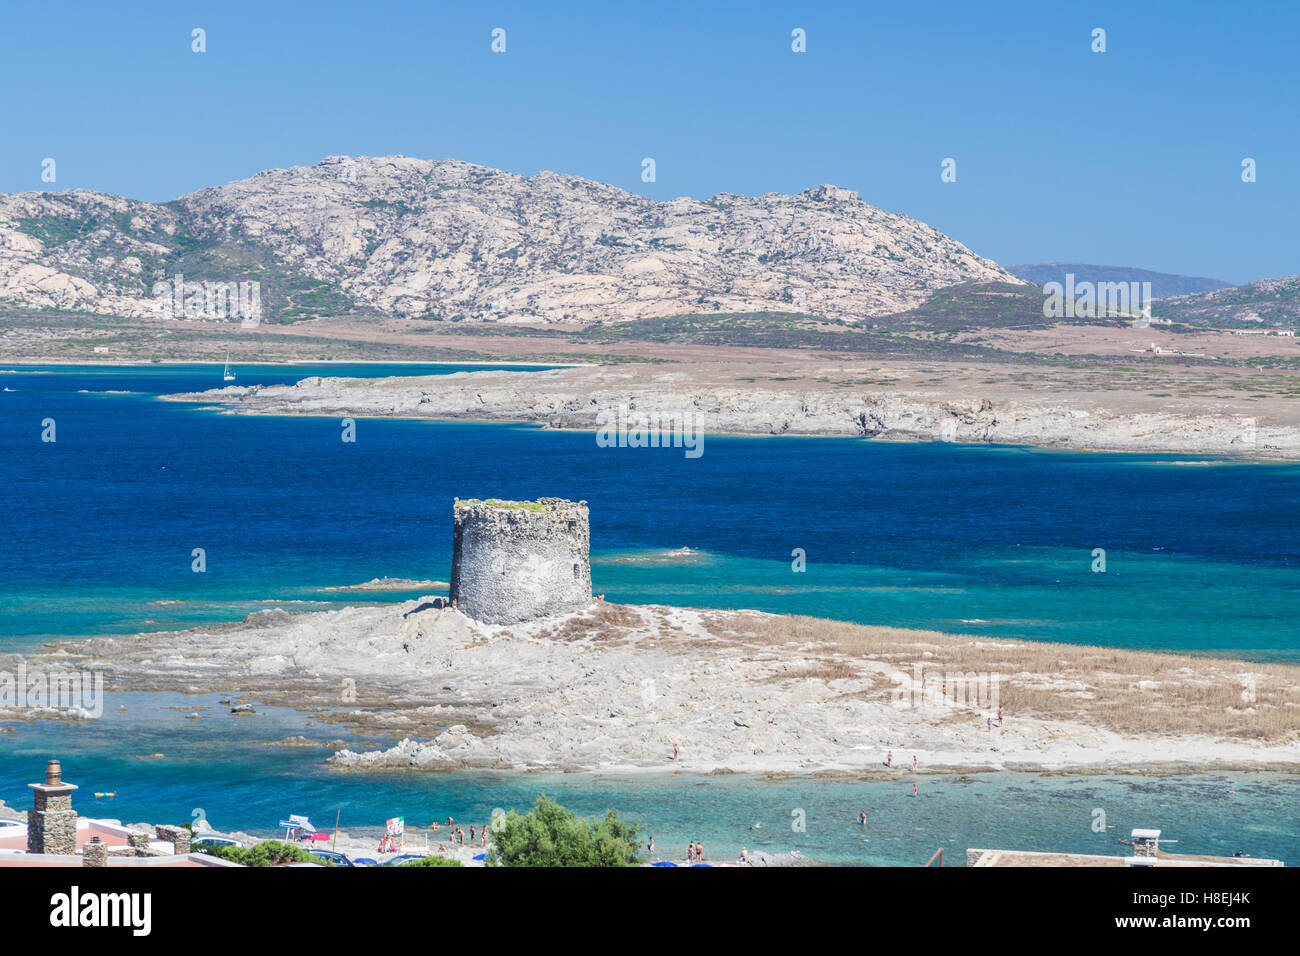 Il mare turchese e la vecchia torre circondano spiaggia della Pelosa, Stintino, Parco Nazionale dell'Asinara, provincia di Sassari, Sardegna, Italia Foto Stock